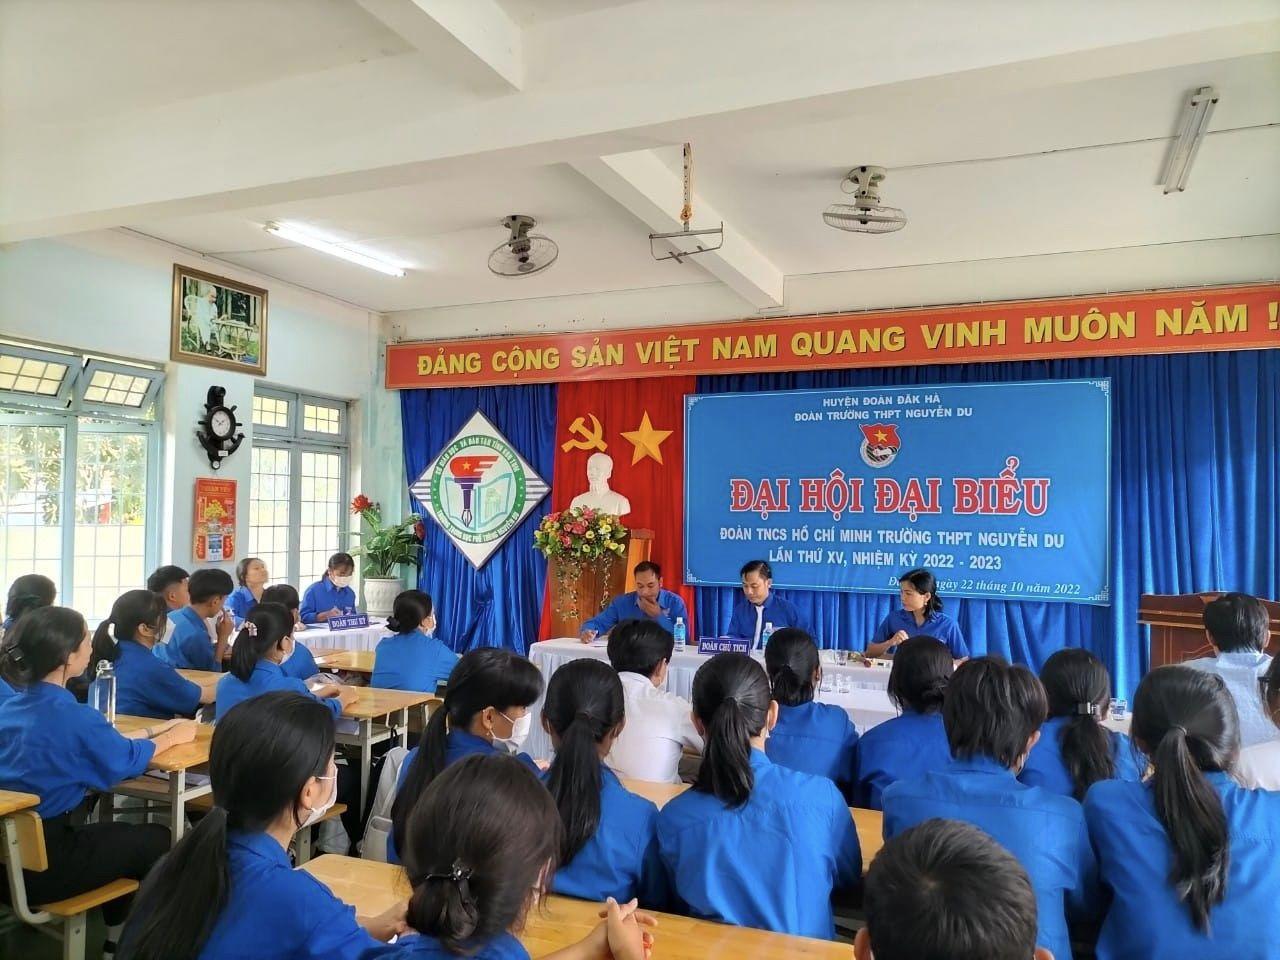 Đánh giá Trường THPT Nguyễn Du - Kom Tum có tốt không